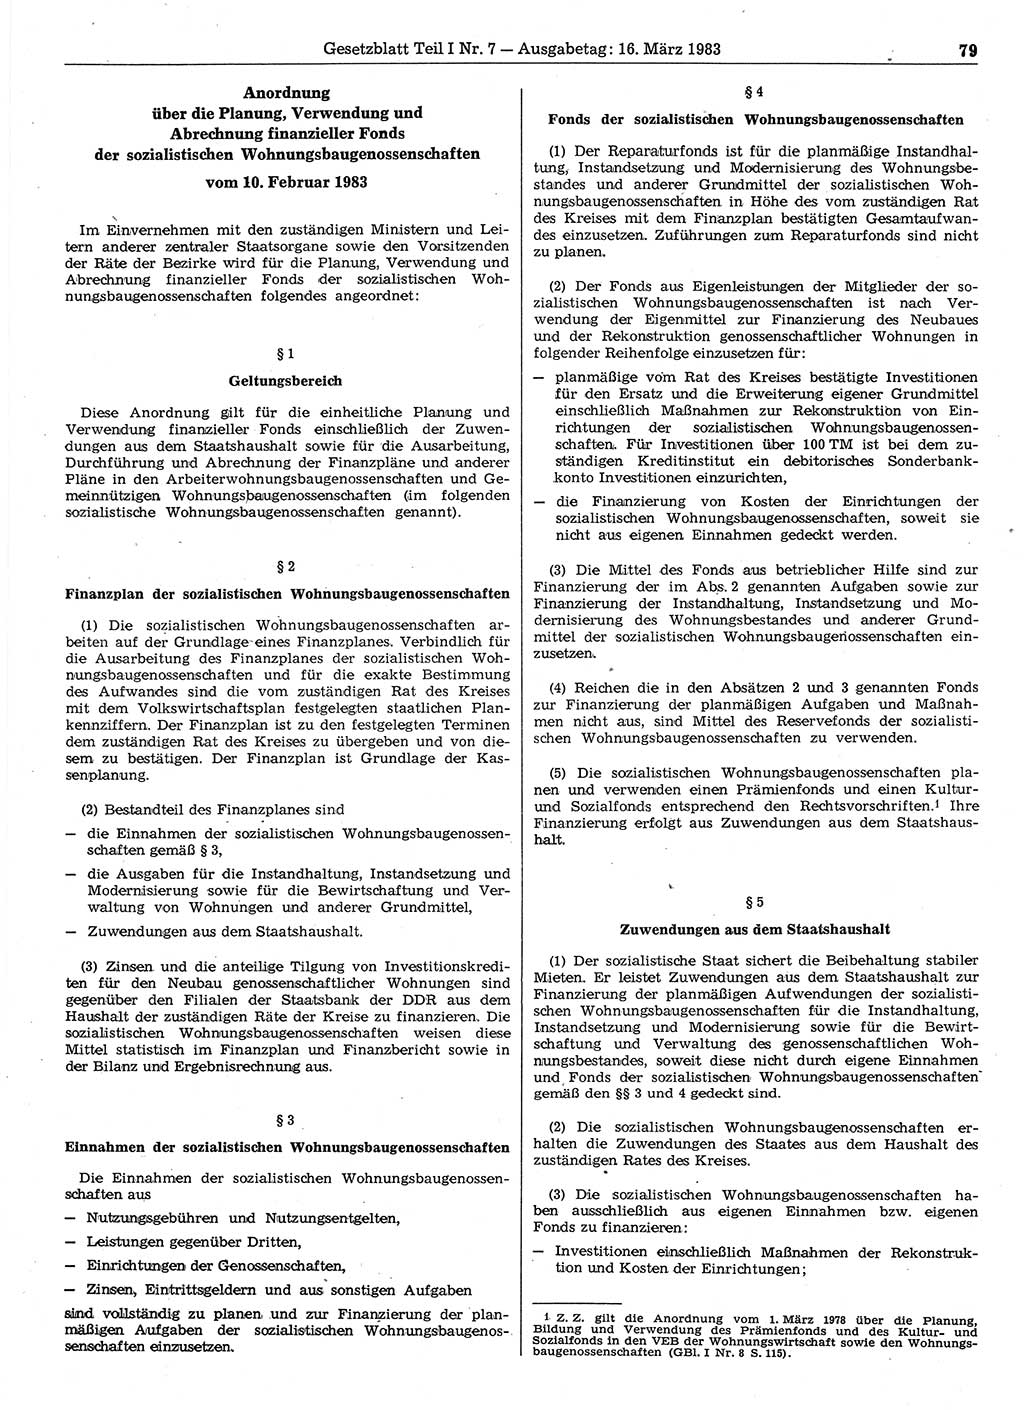 Gesetzblatt (GBl.) der Deutschen Demokratischen Republik (DDR) Teil Ⅰ 1983, Seite 79 (GBl. DDR Ⅰ 1983, S. 79)